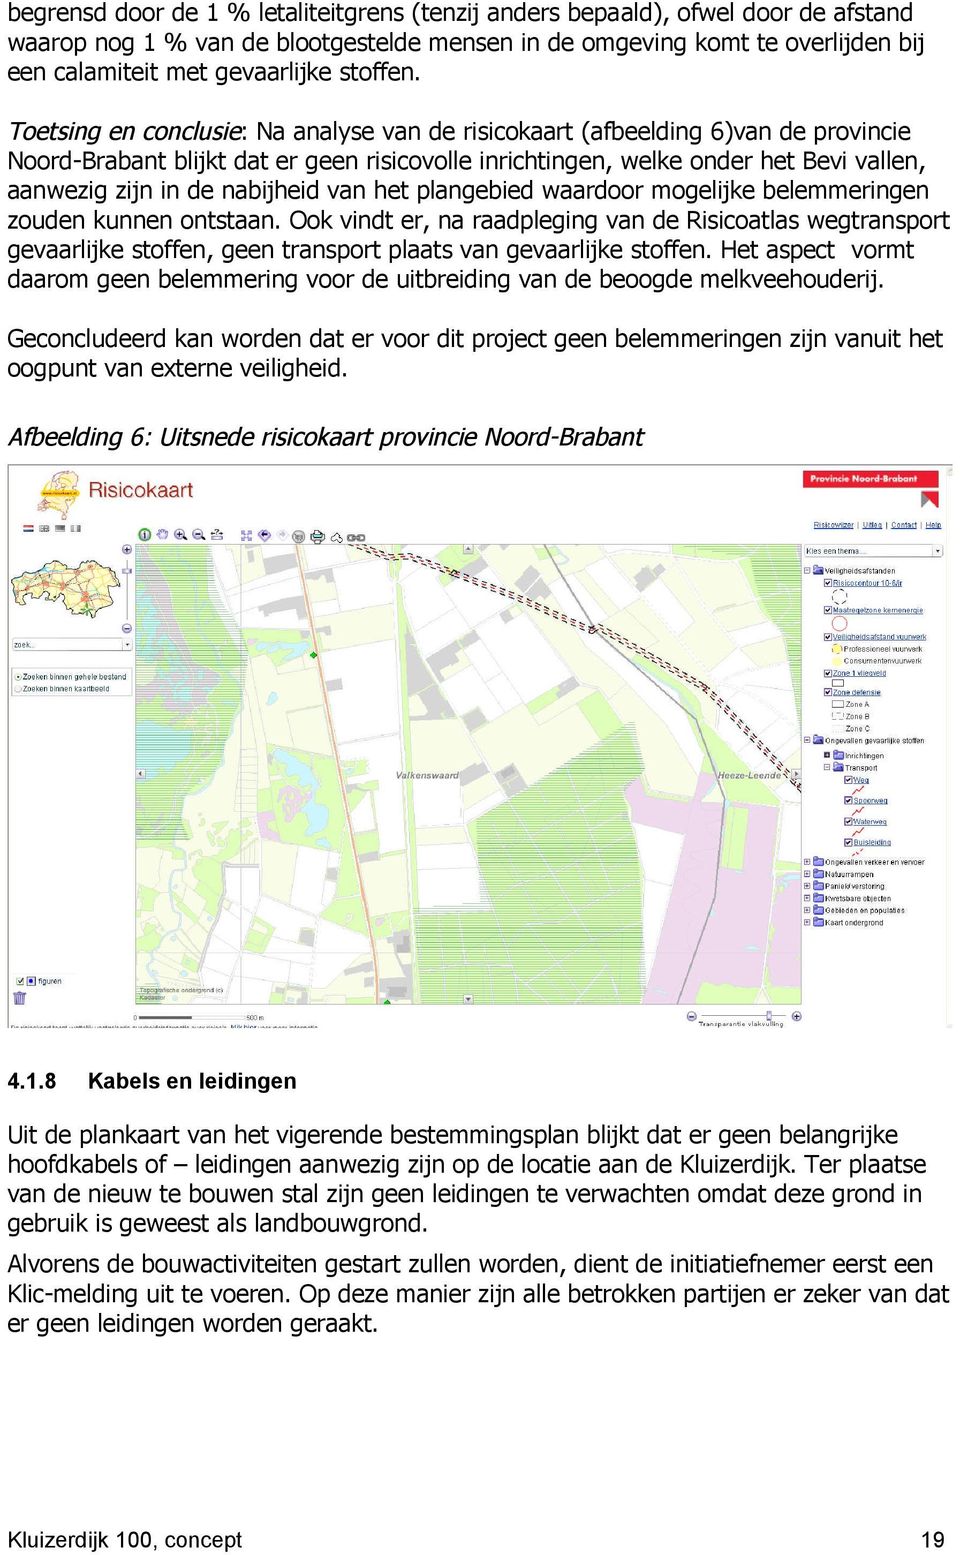 Toetsing en conclusie: Na analyse van de risicokaart (afbeelding 6)van de provincie Noord-Brabant blijkt dat er geen risicovolle inrichtingen, welke onder het Bevi vallen, aanwezig zijn in de